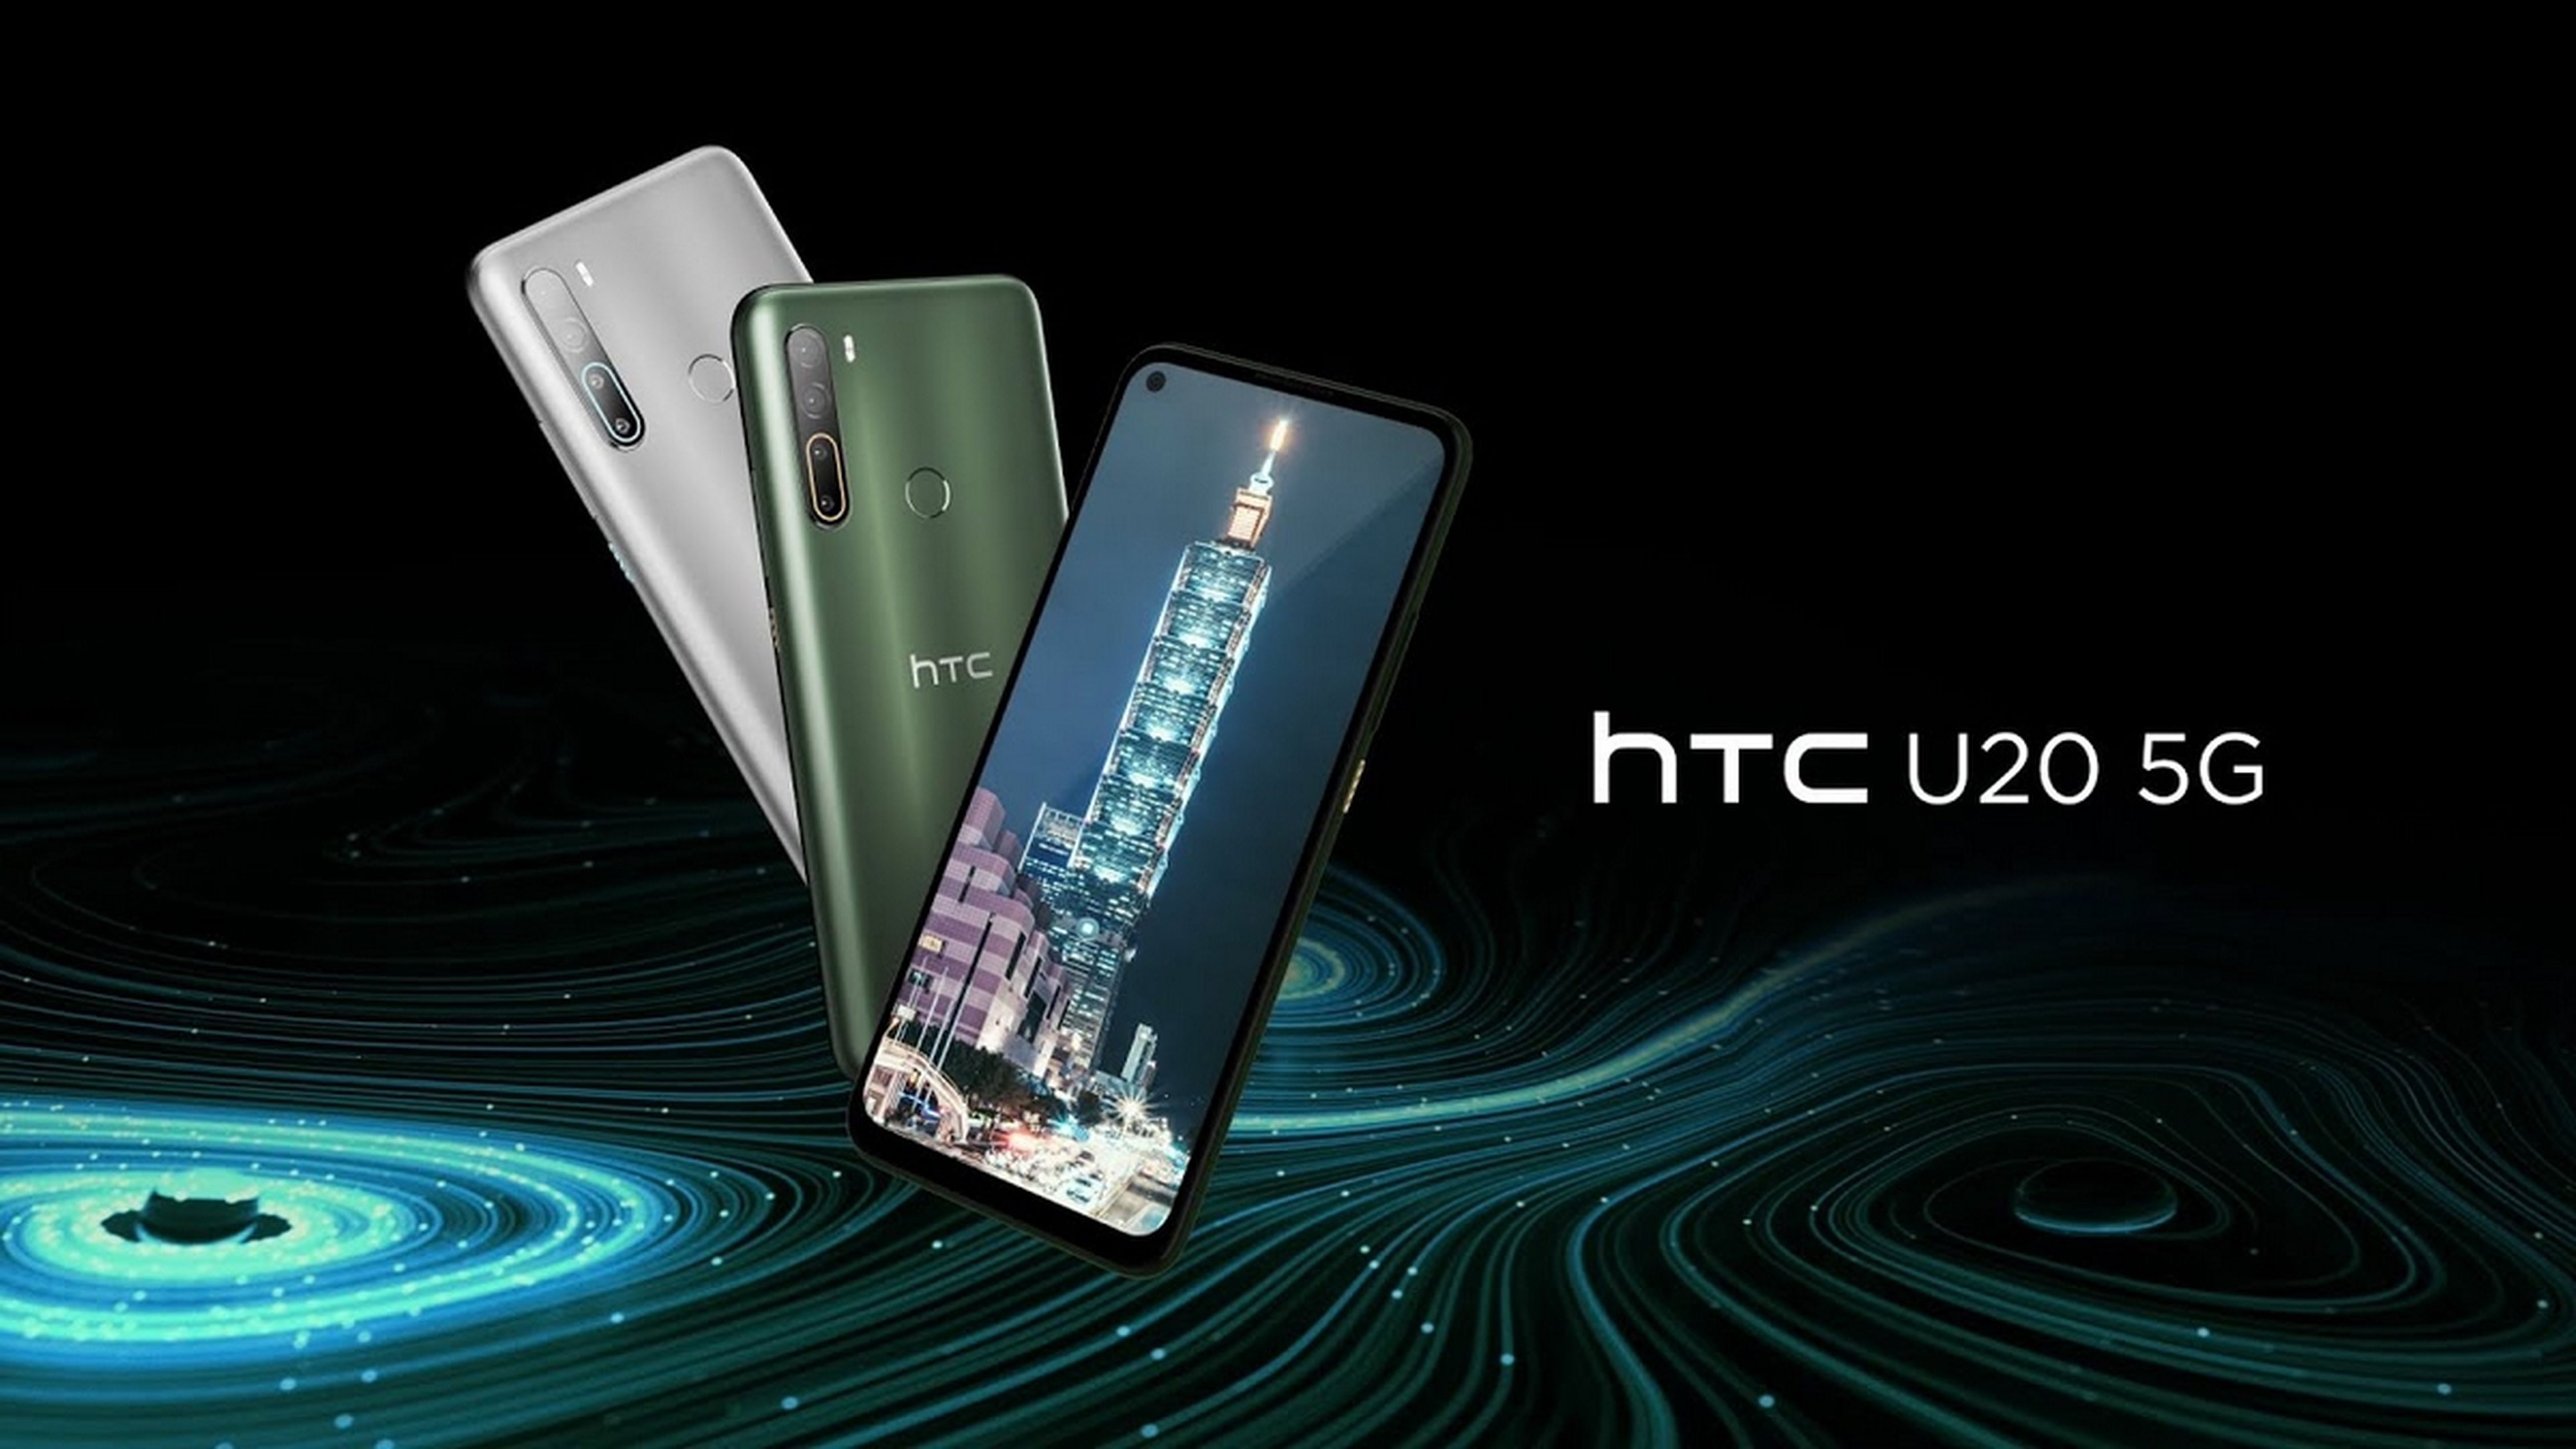 HTC U20 5G, el primer móvil con conexión 5G de HTC